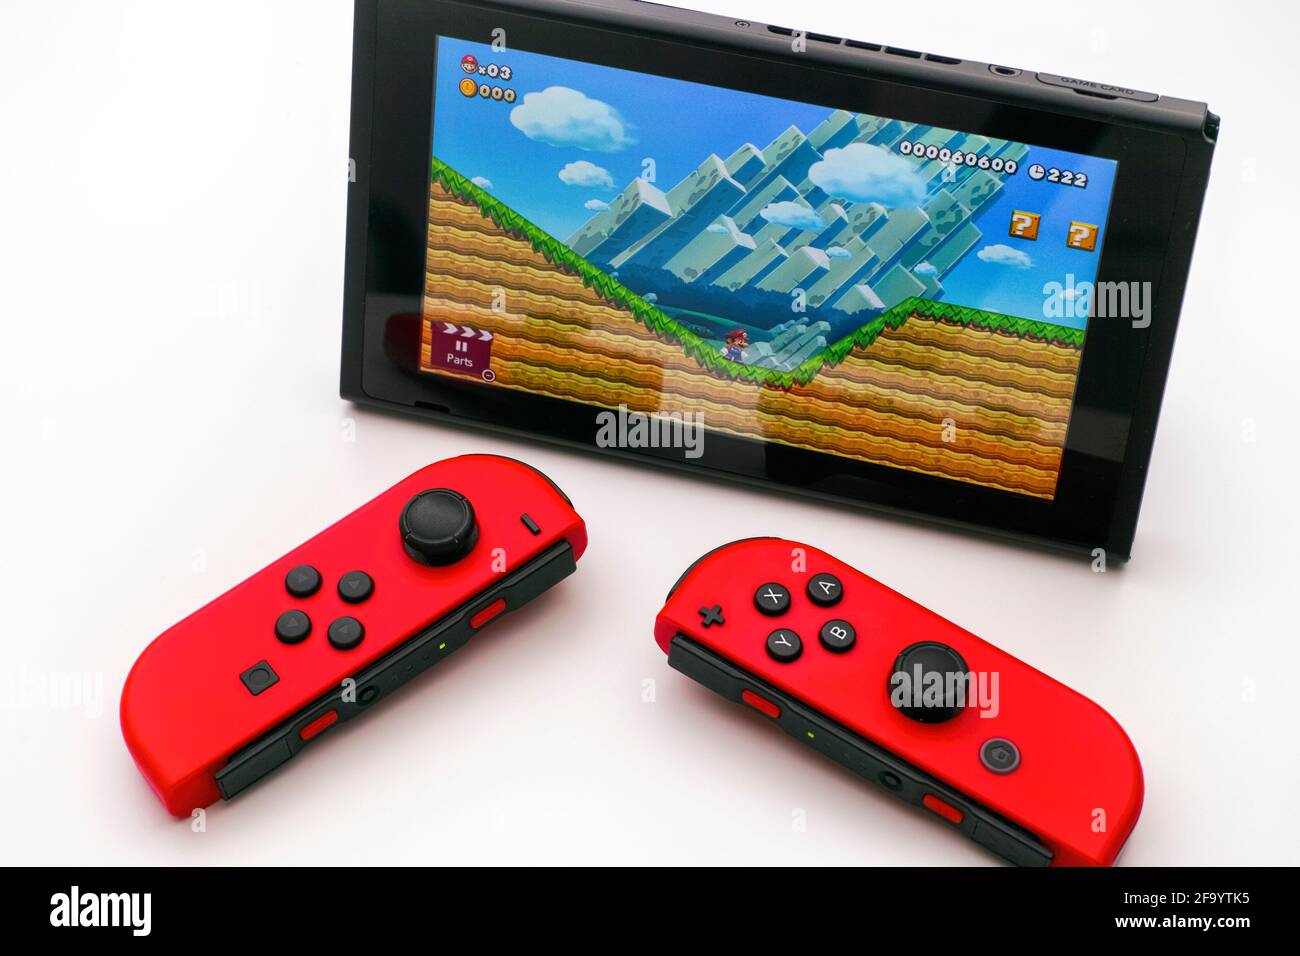 Tambov, Russische Föderation - 27. Dezember 2019 Super Mario Maker 2 Videospiel auf Nintendo Switch Videospielkonsole und zwei rote Joy-Cons auf weißer Rückseite Stockfoto